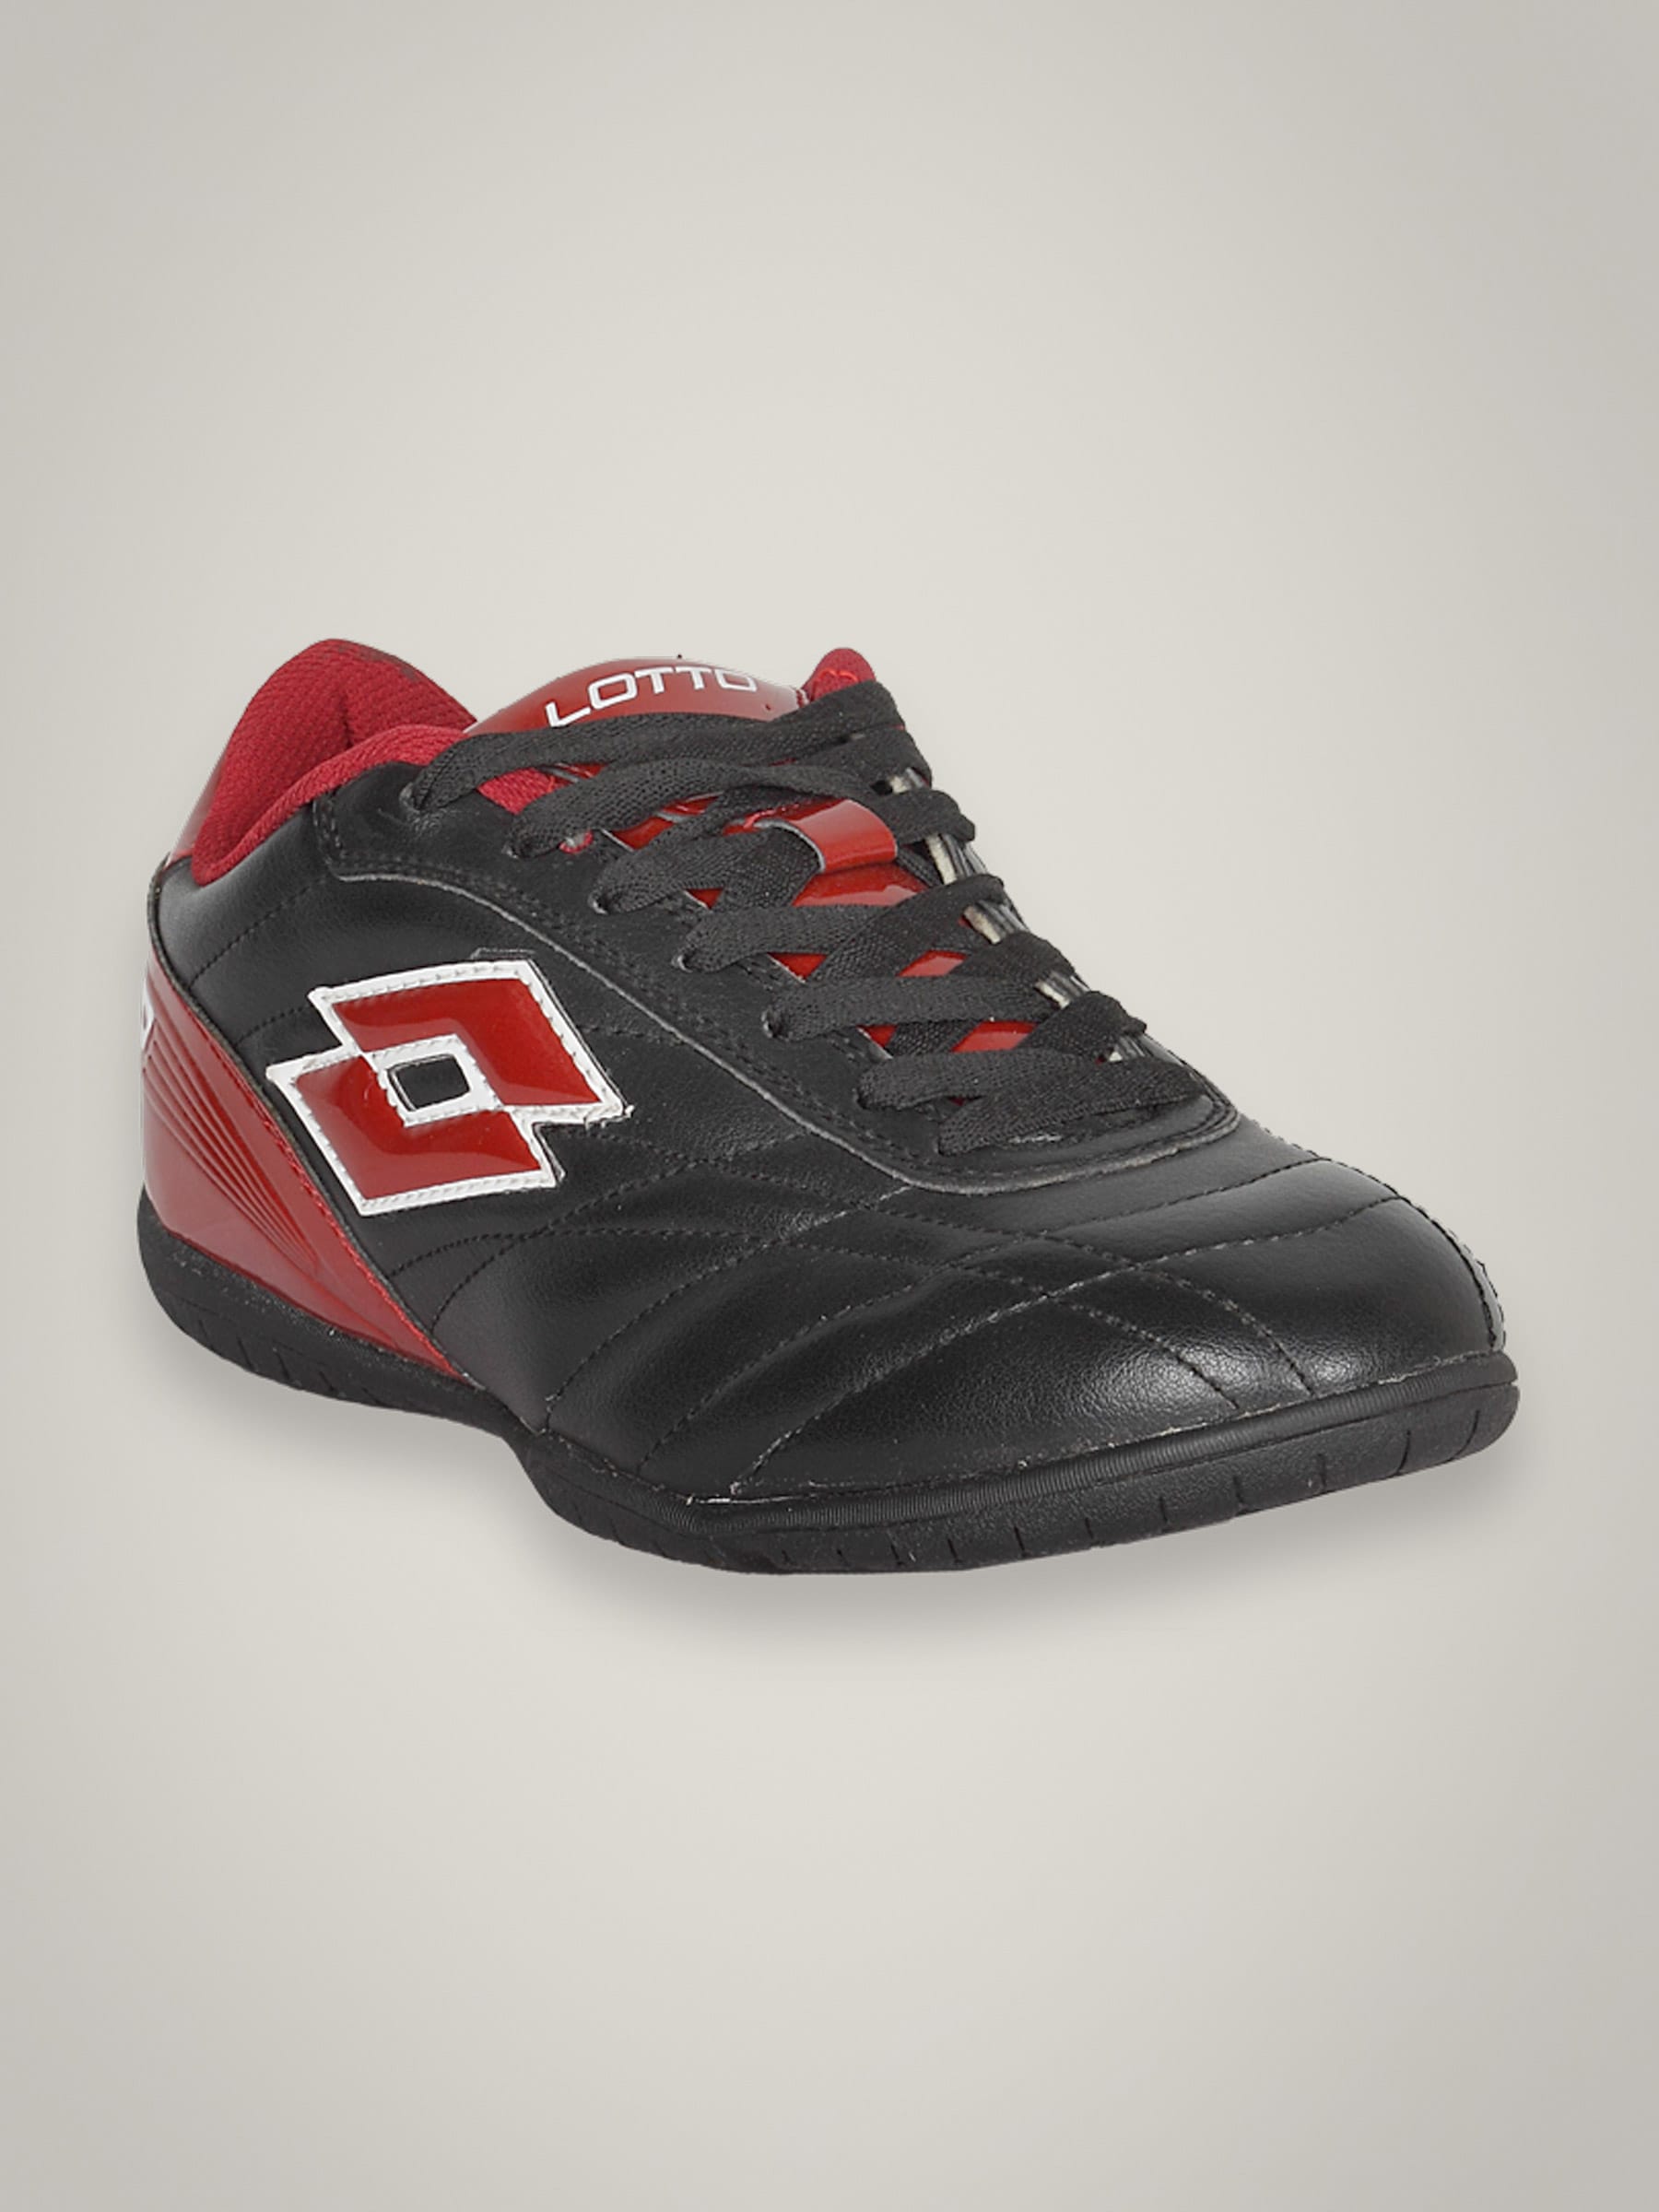 Lotto Men's Calcetto Black Red Shoe